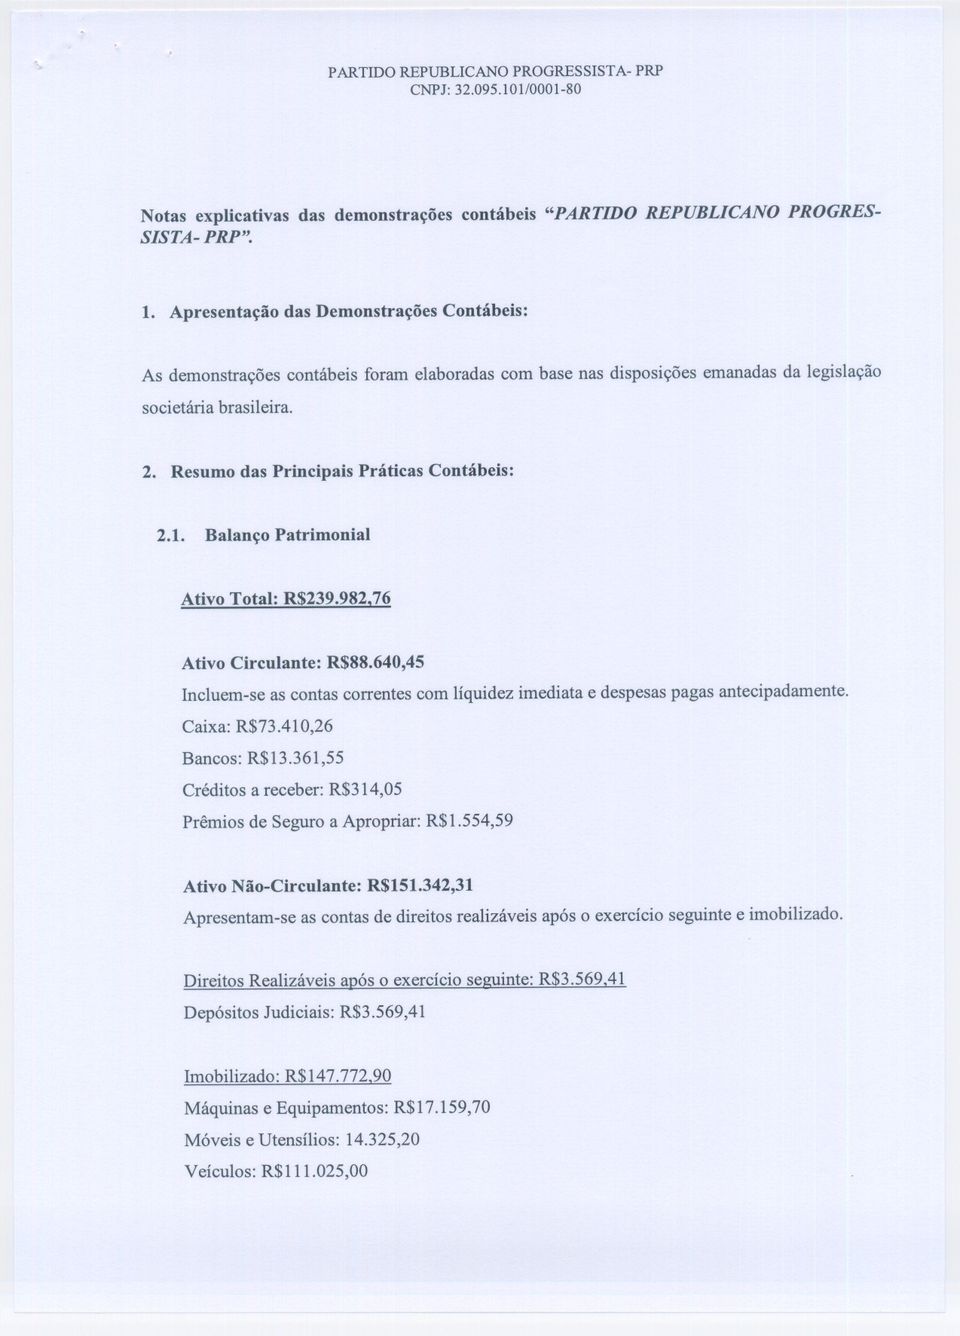 Resumo das Principais Práticas Contábeis: 2.1. Balanço Patrimonial Ativo Total: R$239.982.76 Ativo Circulante: R$88.